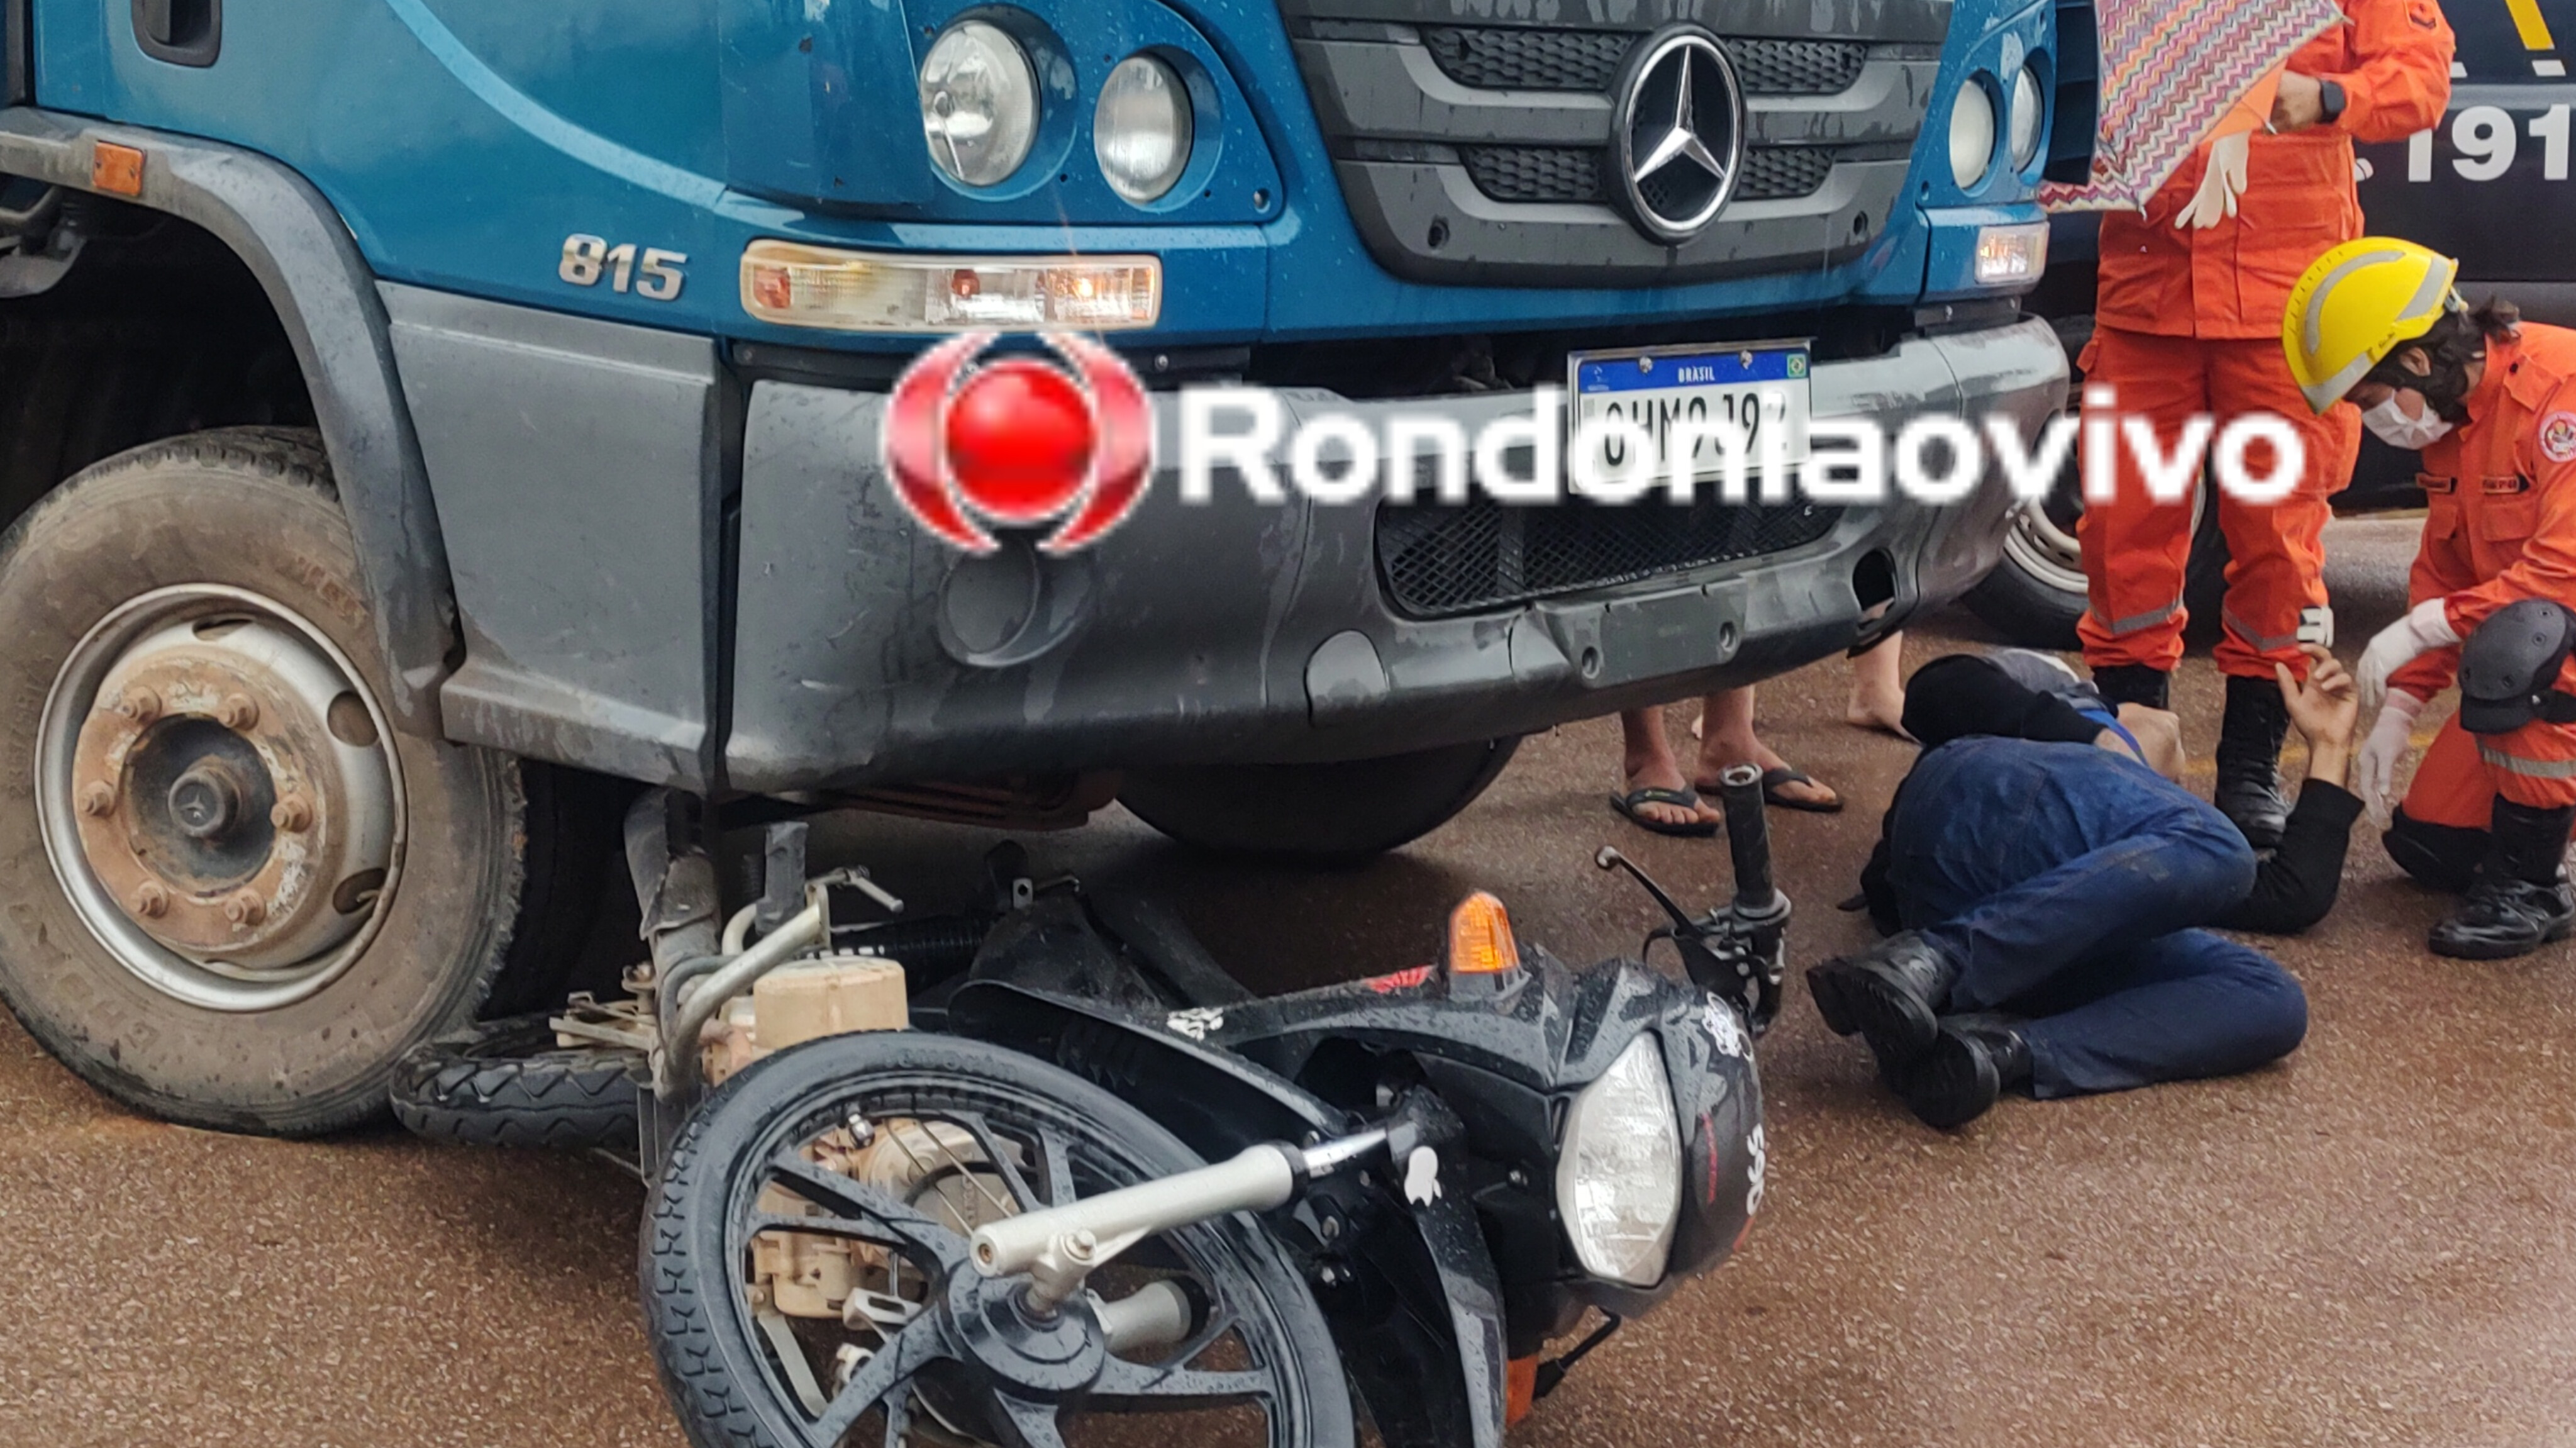 VÍDEO: Motociclista fica em estado grave em acidente com caminhão